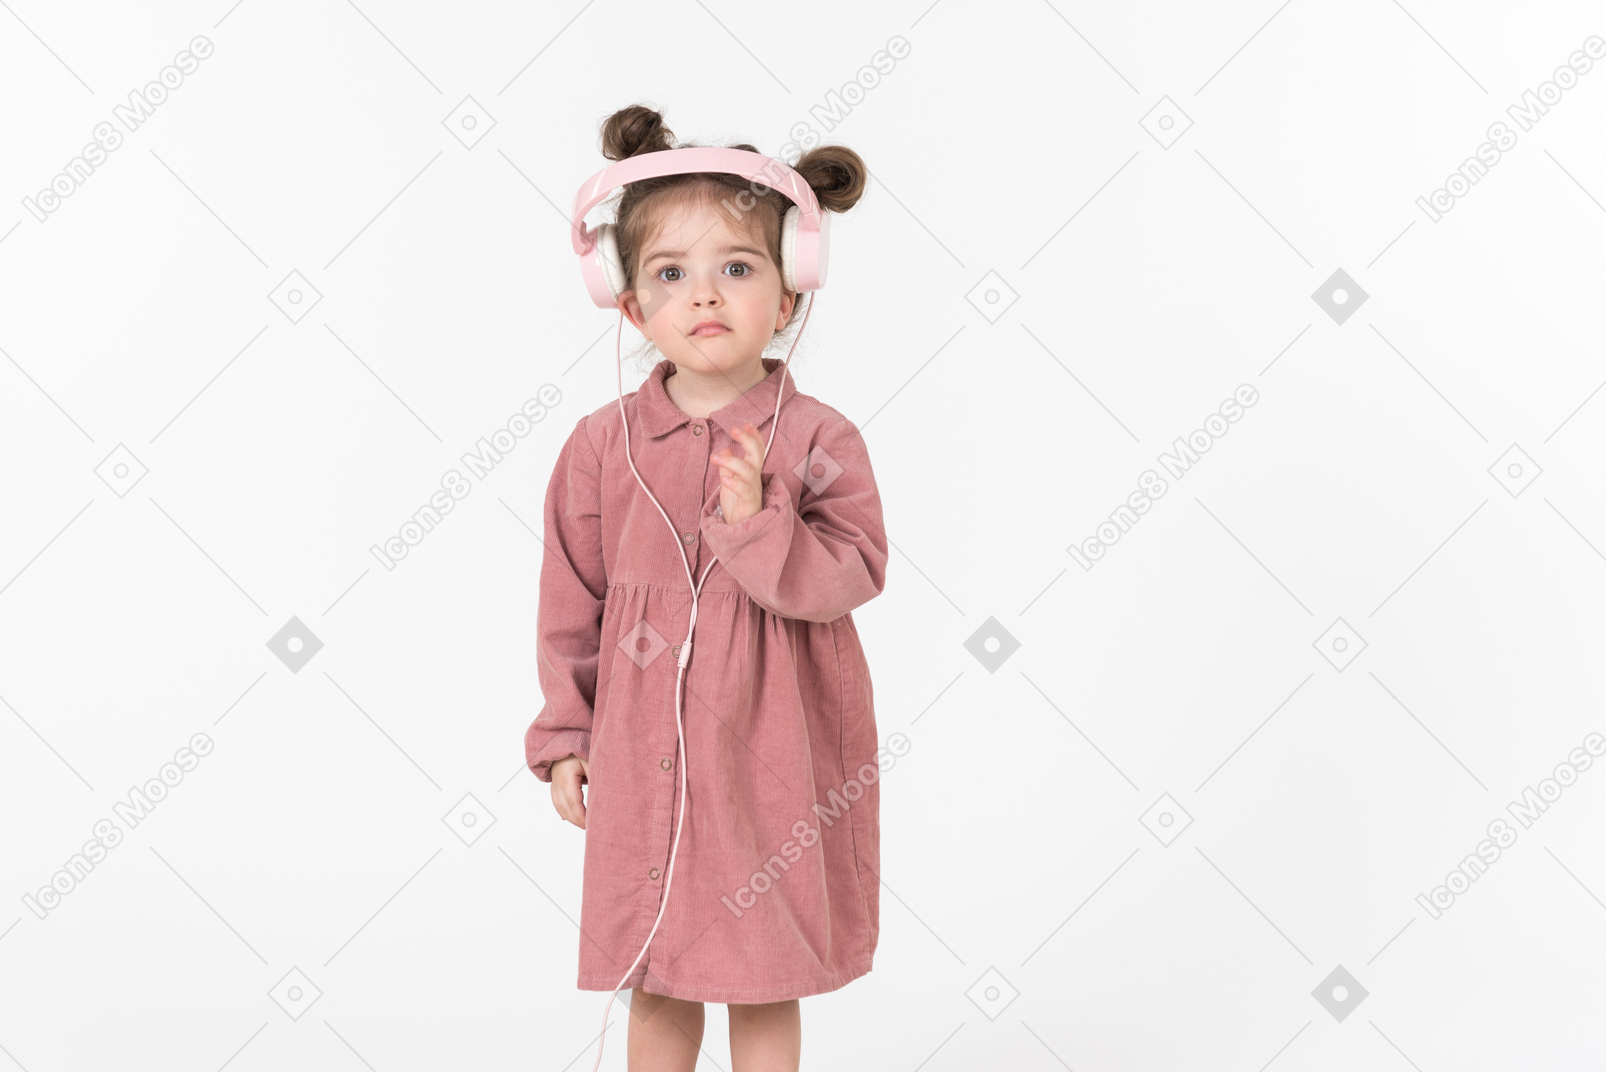 Funny looking kid girl wearing pink headphones